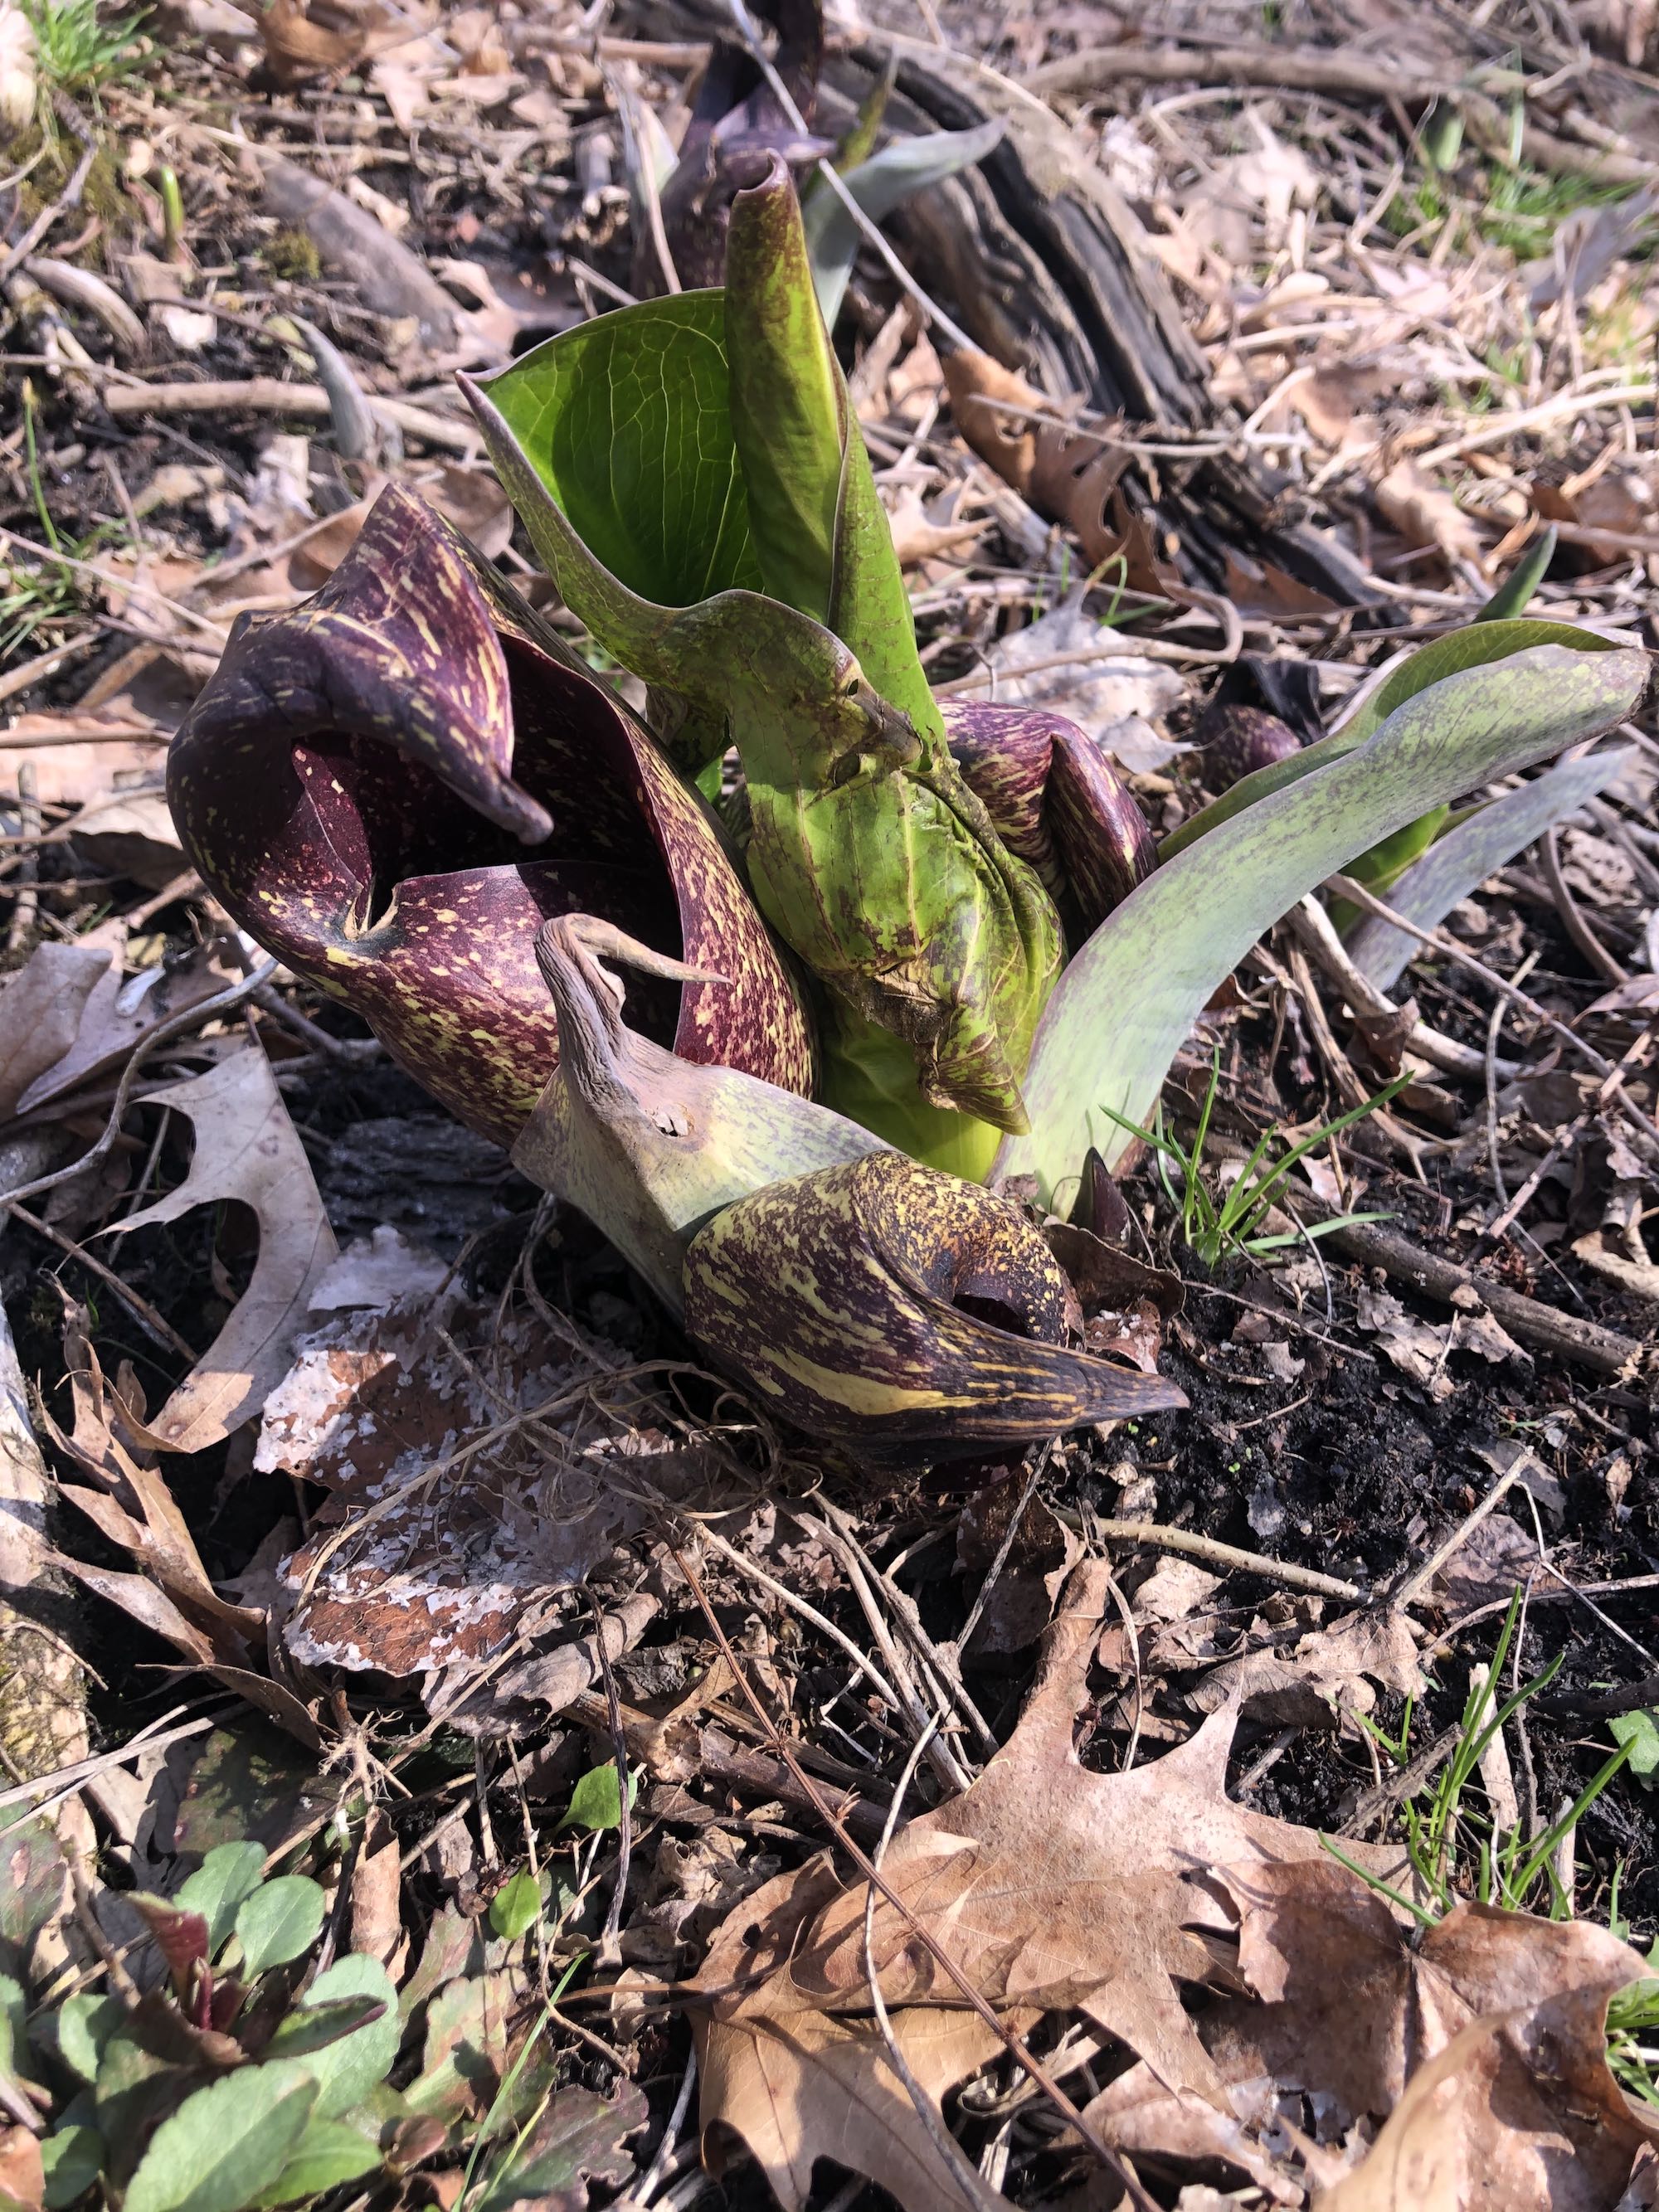 Skunk Cabbage in UW-Madison Arboretum on March 30, 2021.